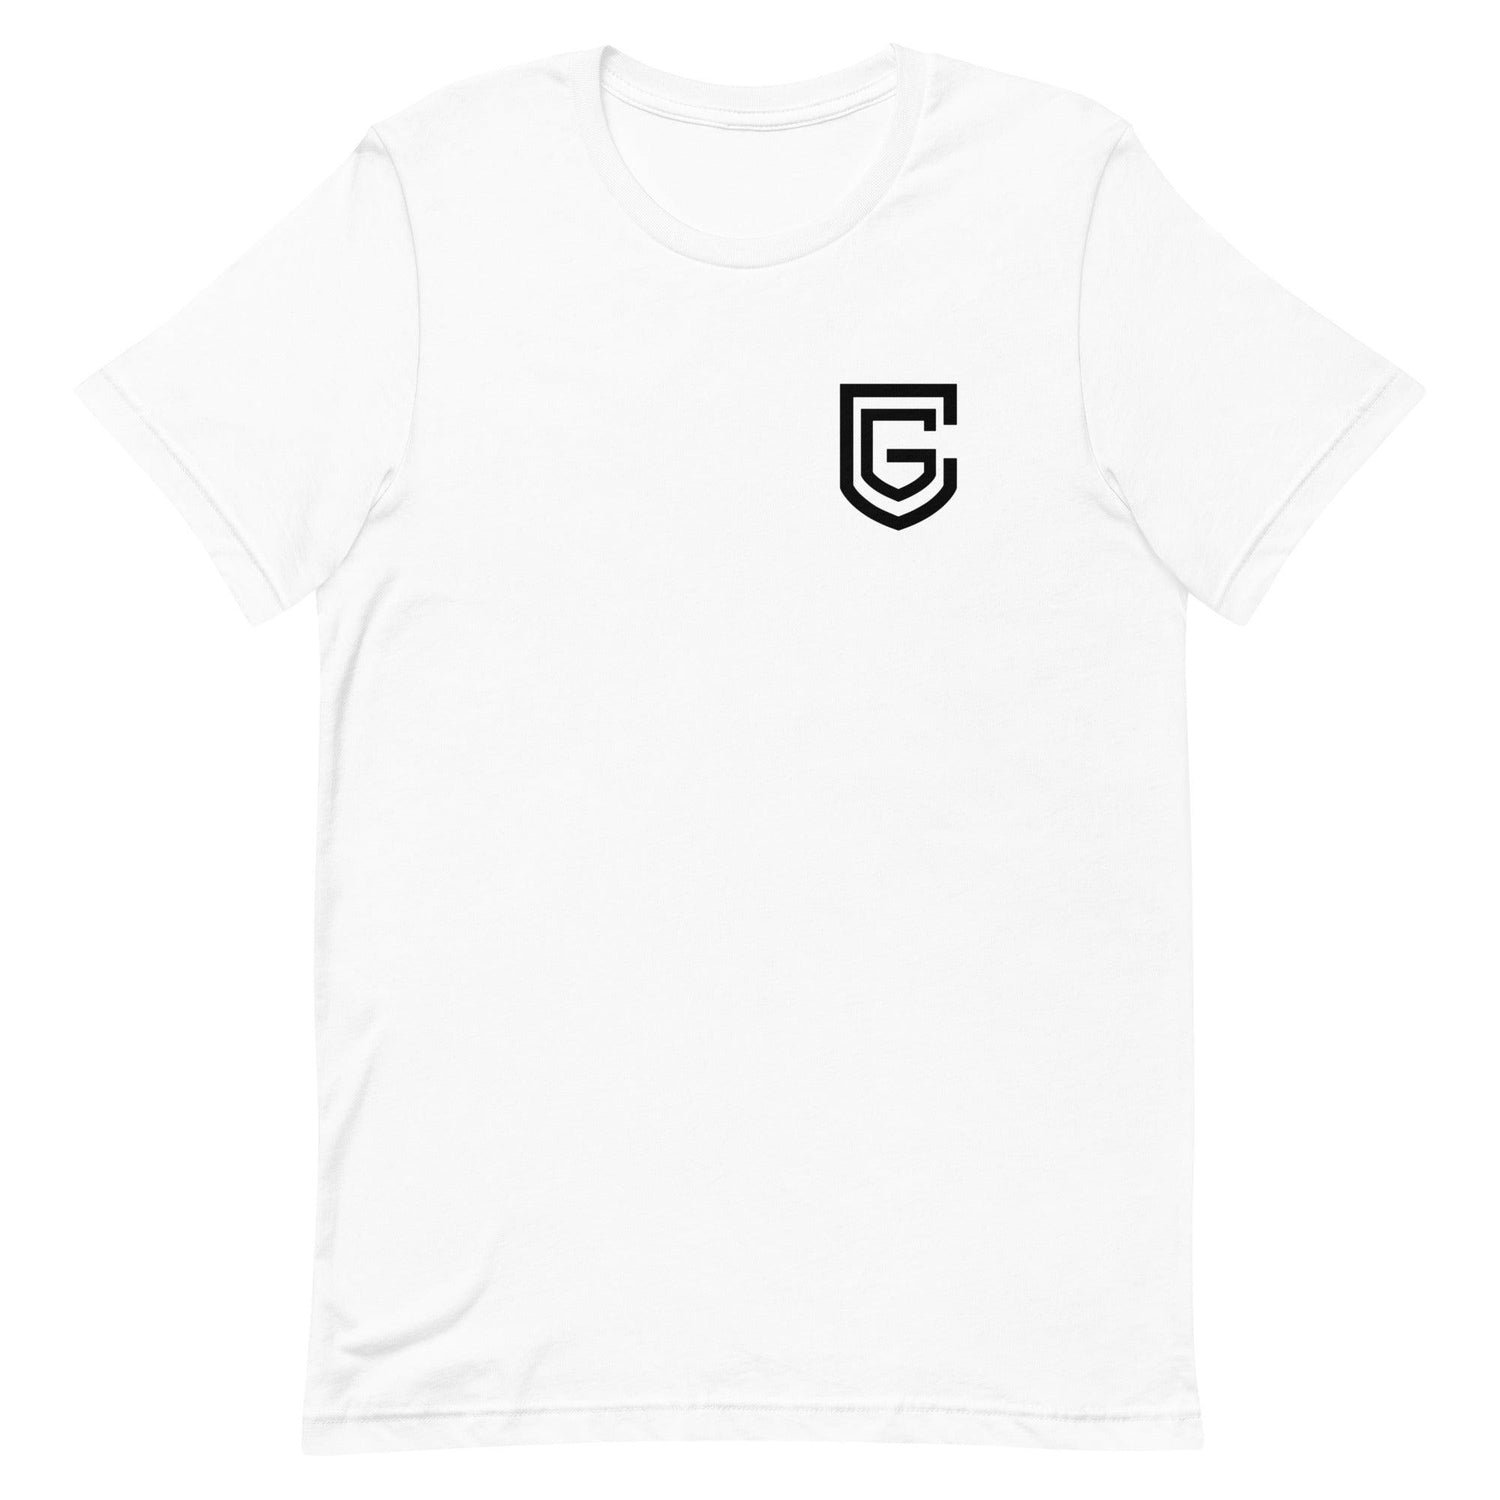 Corey Grant "Essential" t-shirt - Fan Arch